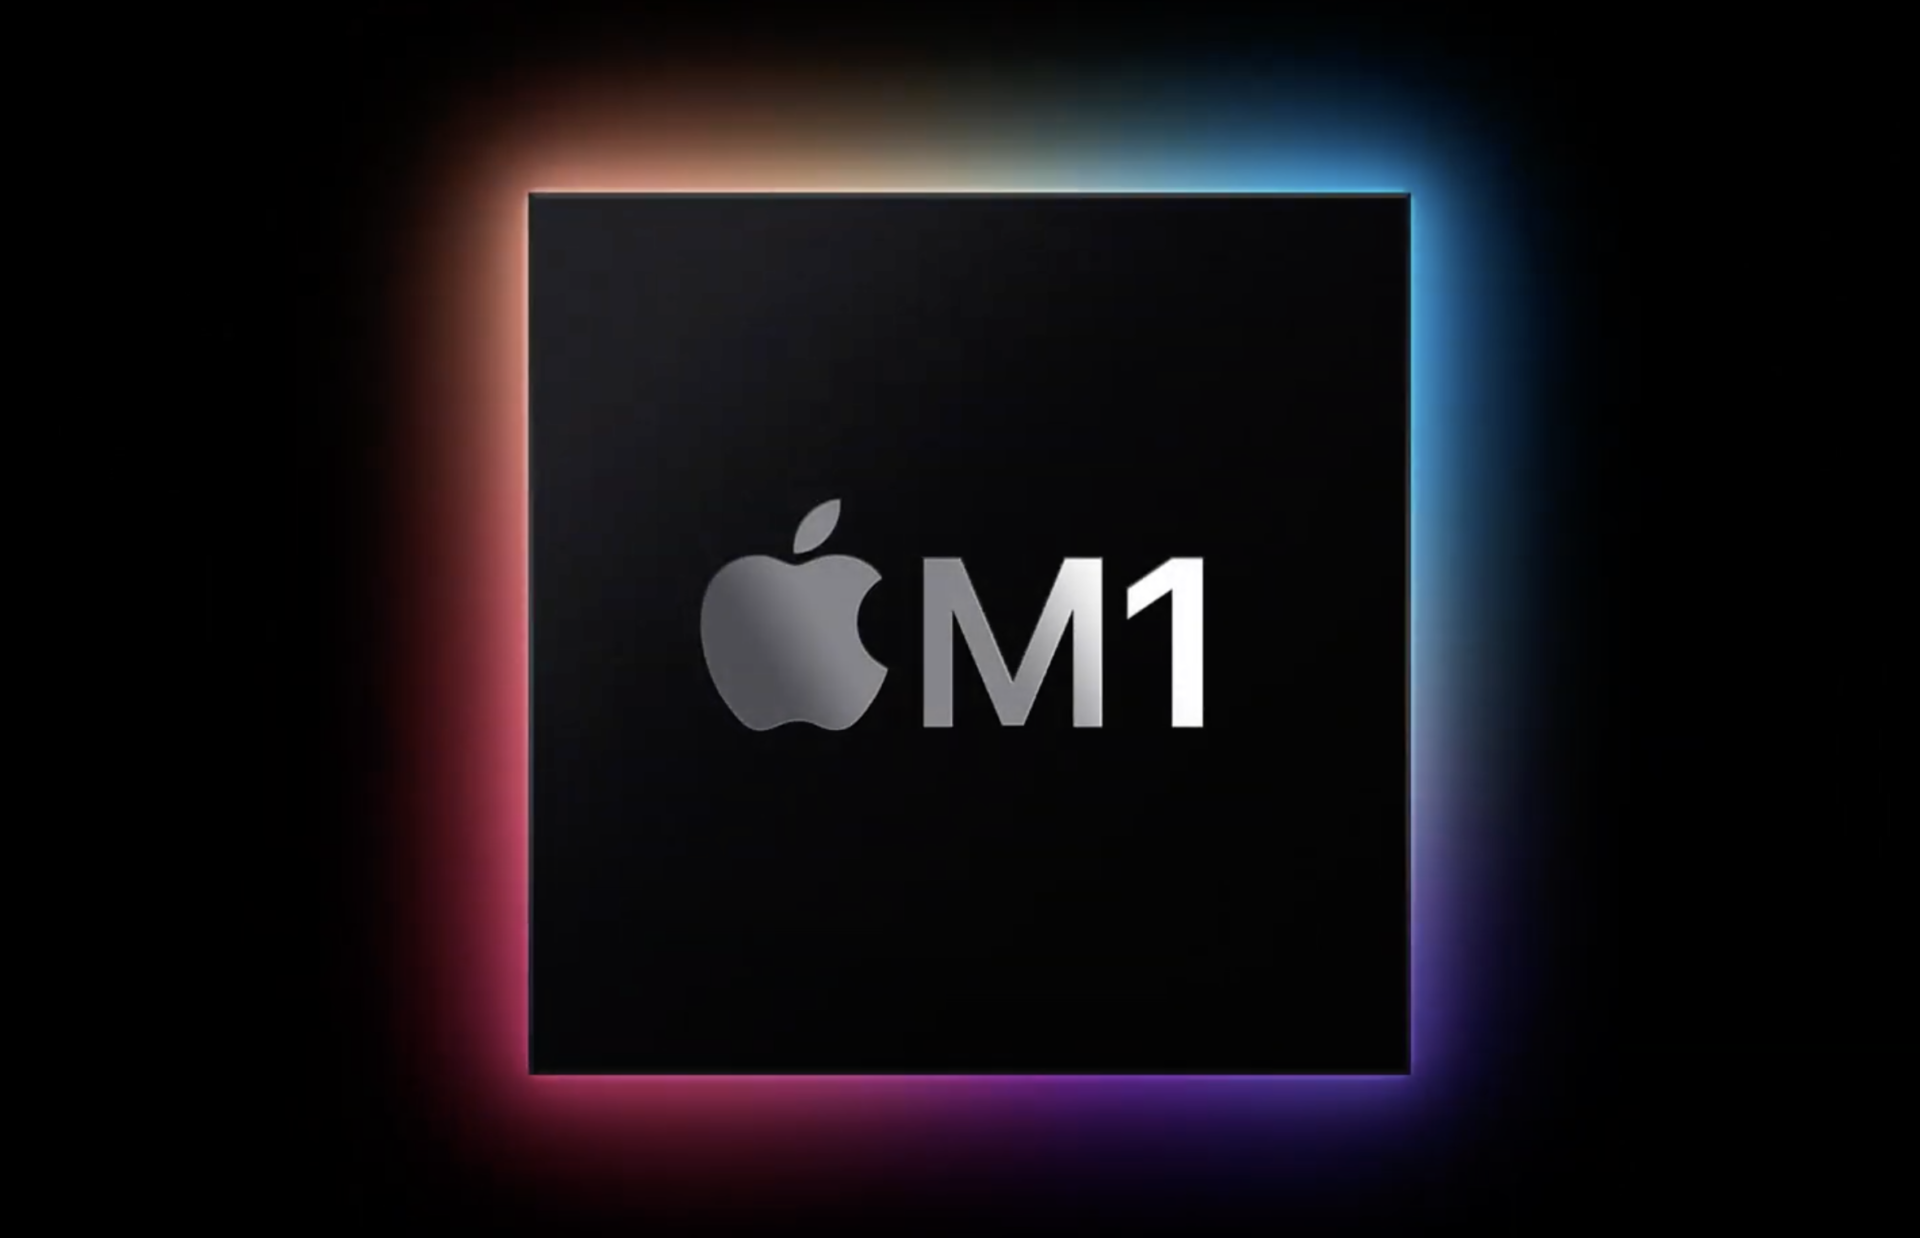 【雑記】M1 MacBook関連の話